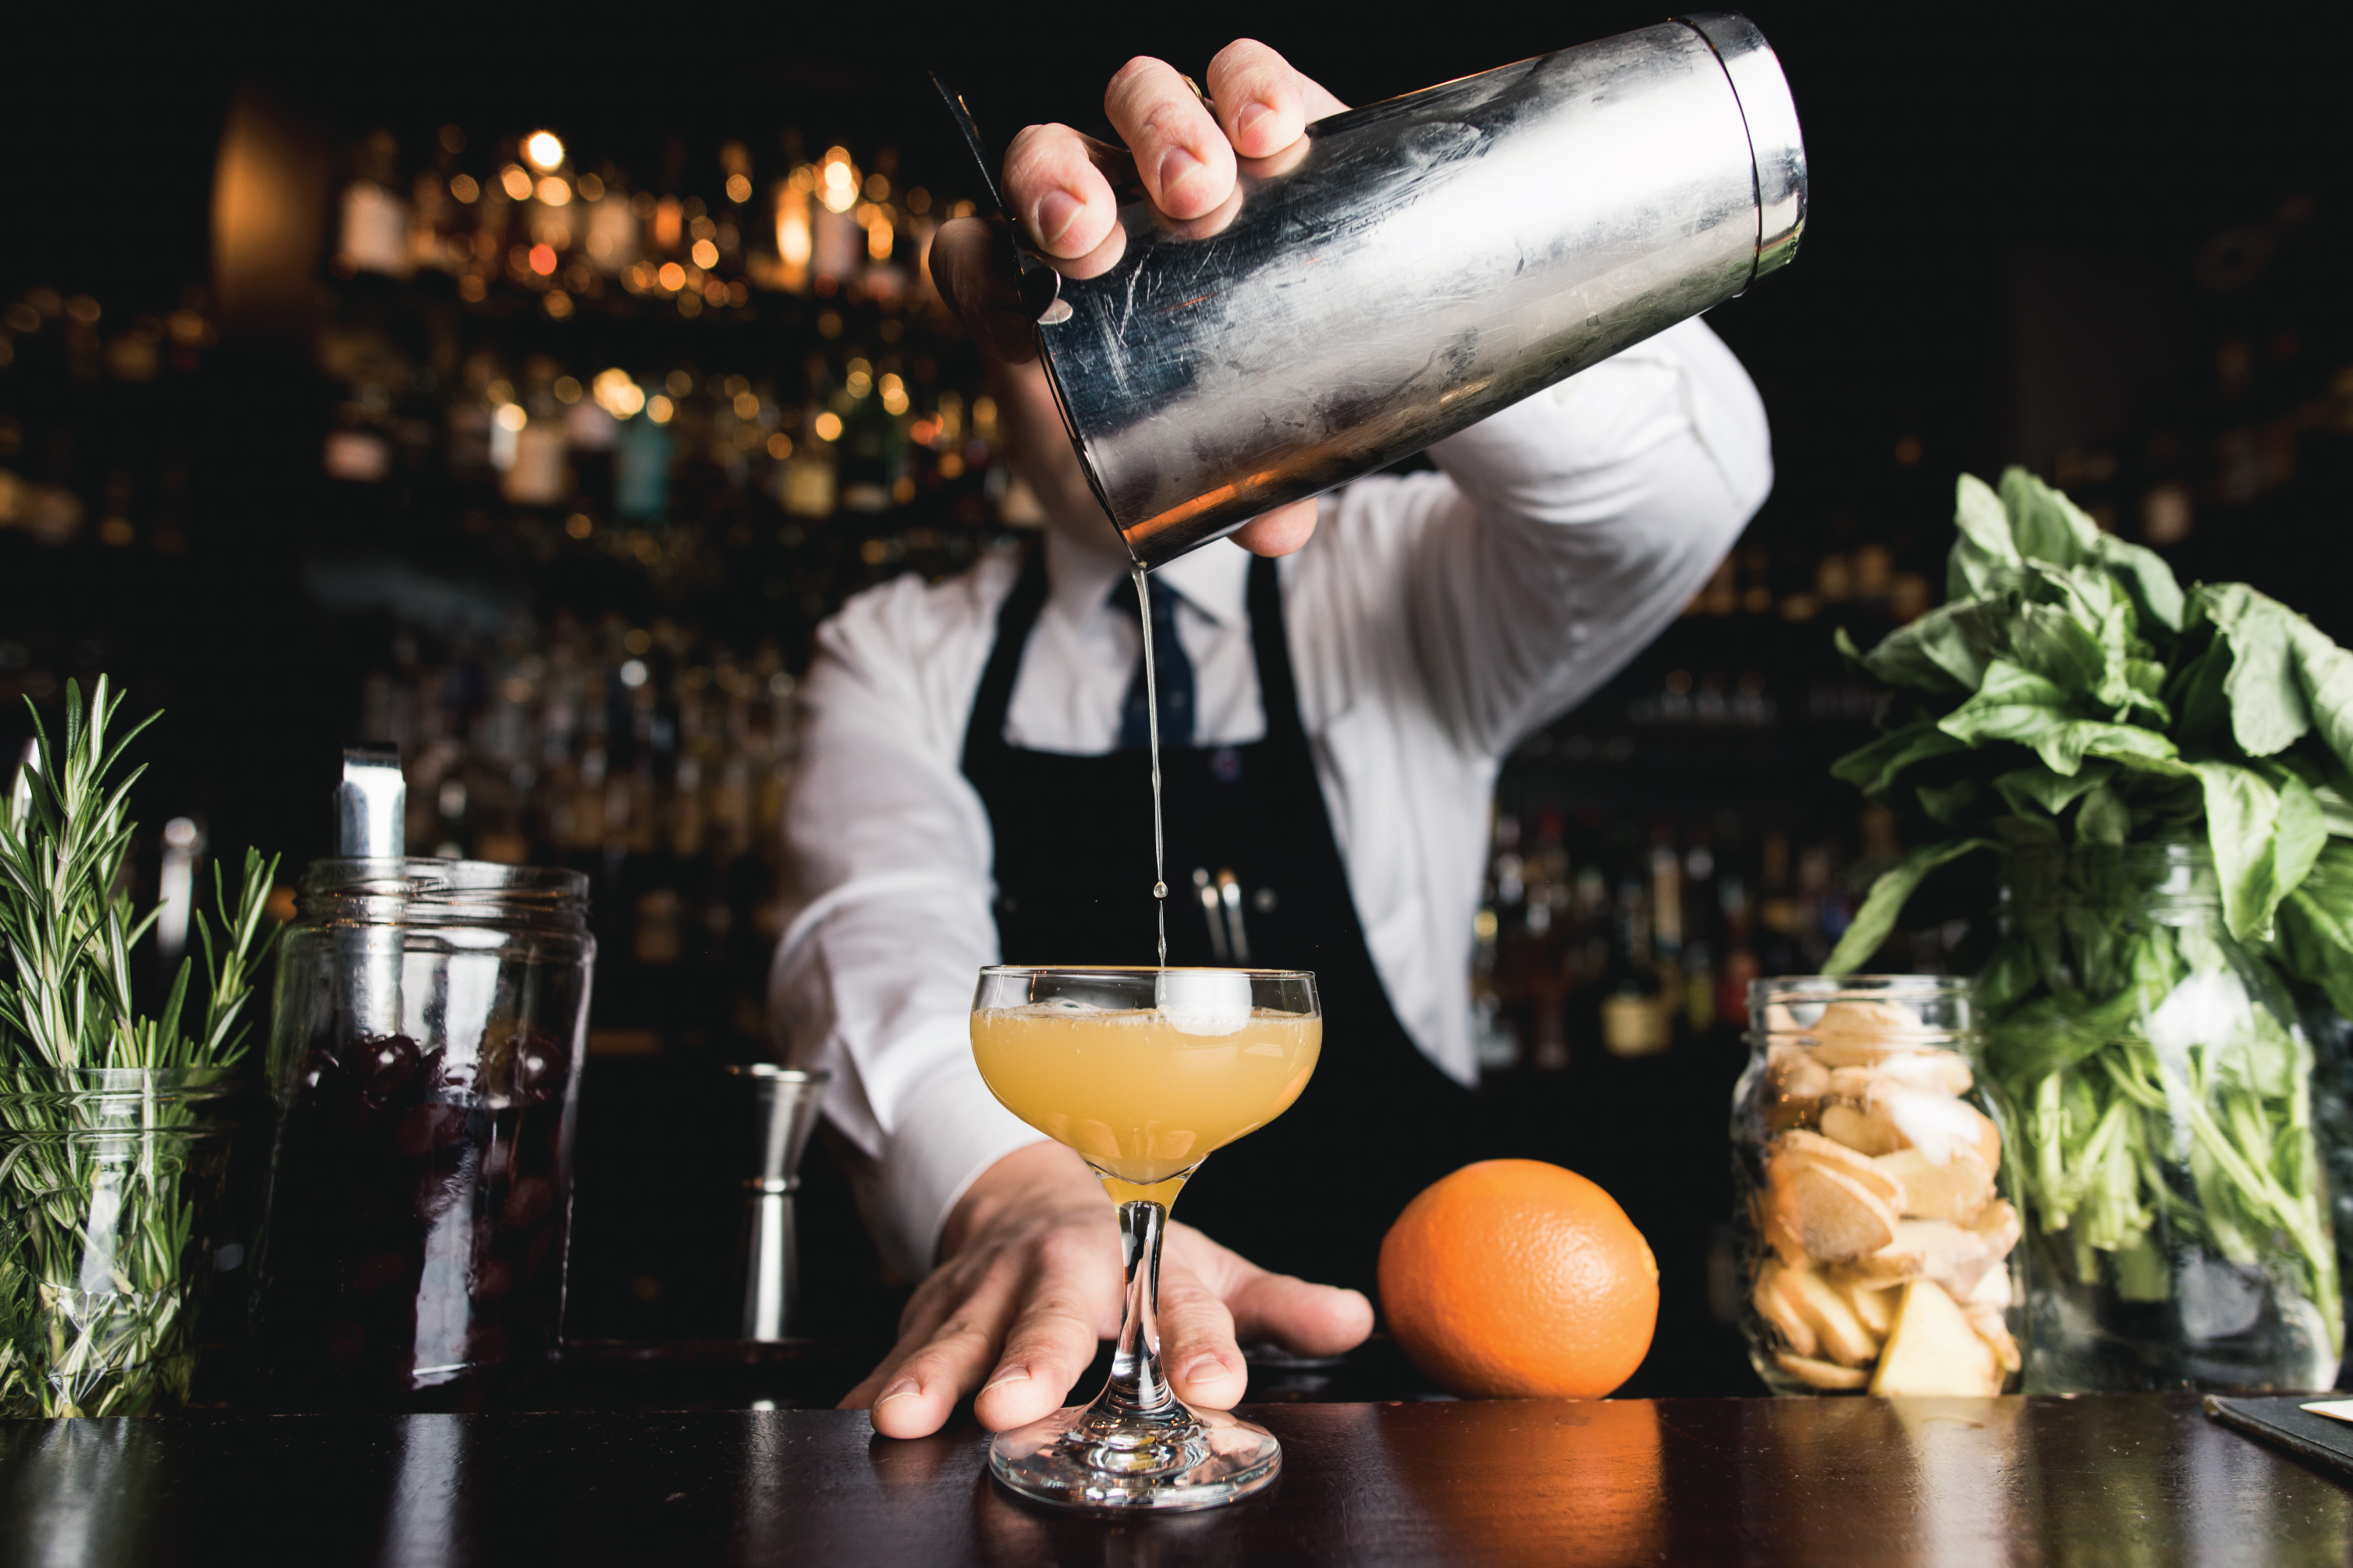 cocktail at a bar